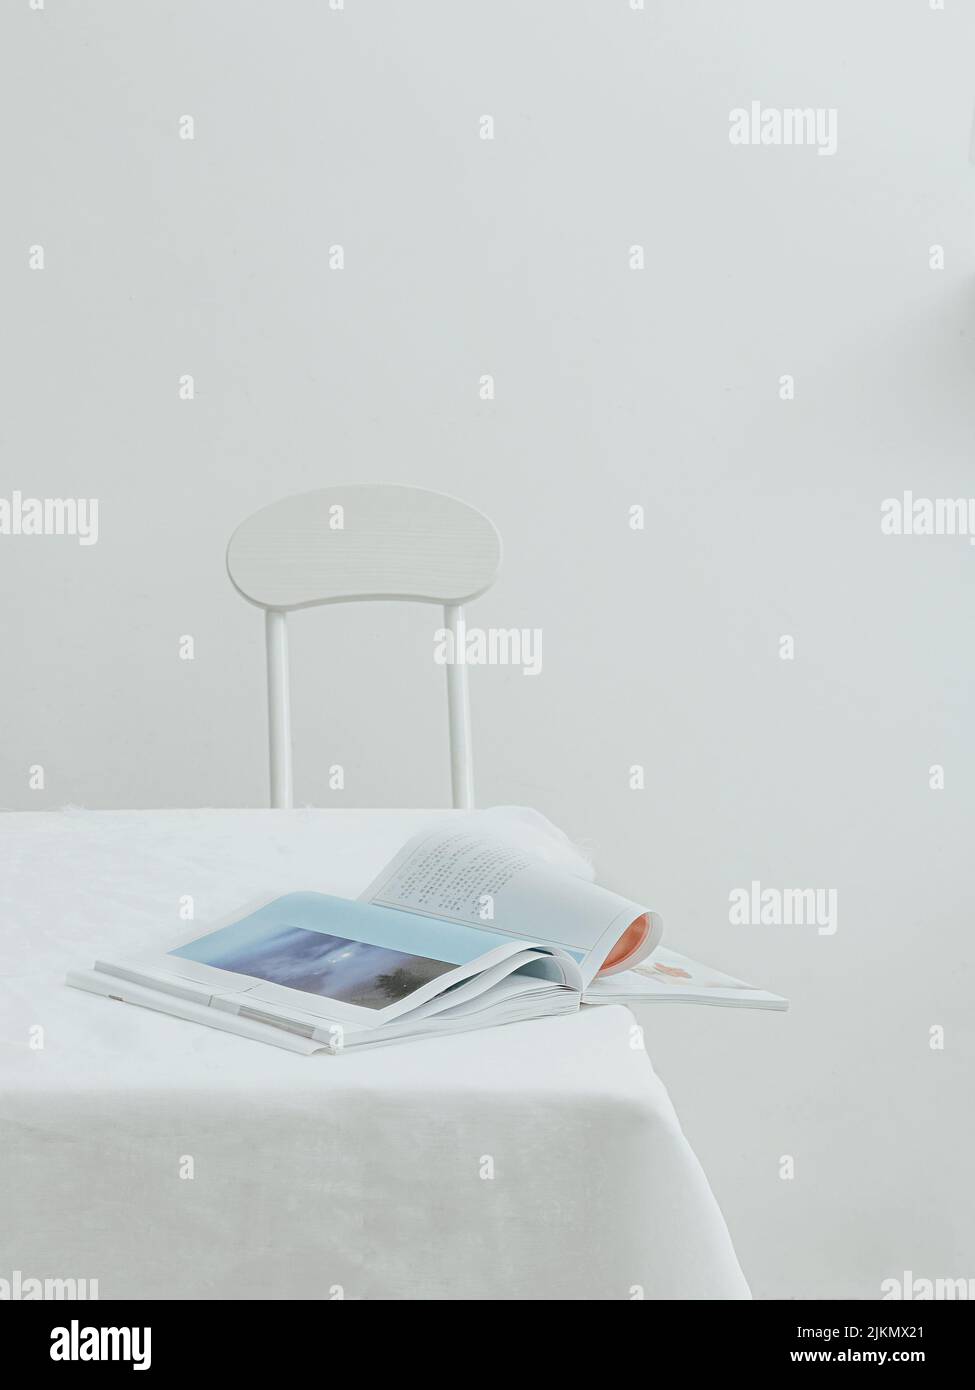 Una vista estetica di un giornale aperto su un tavolo con tovaglia bianca Foto Stock